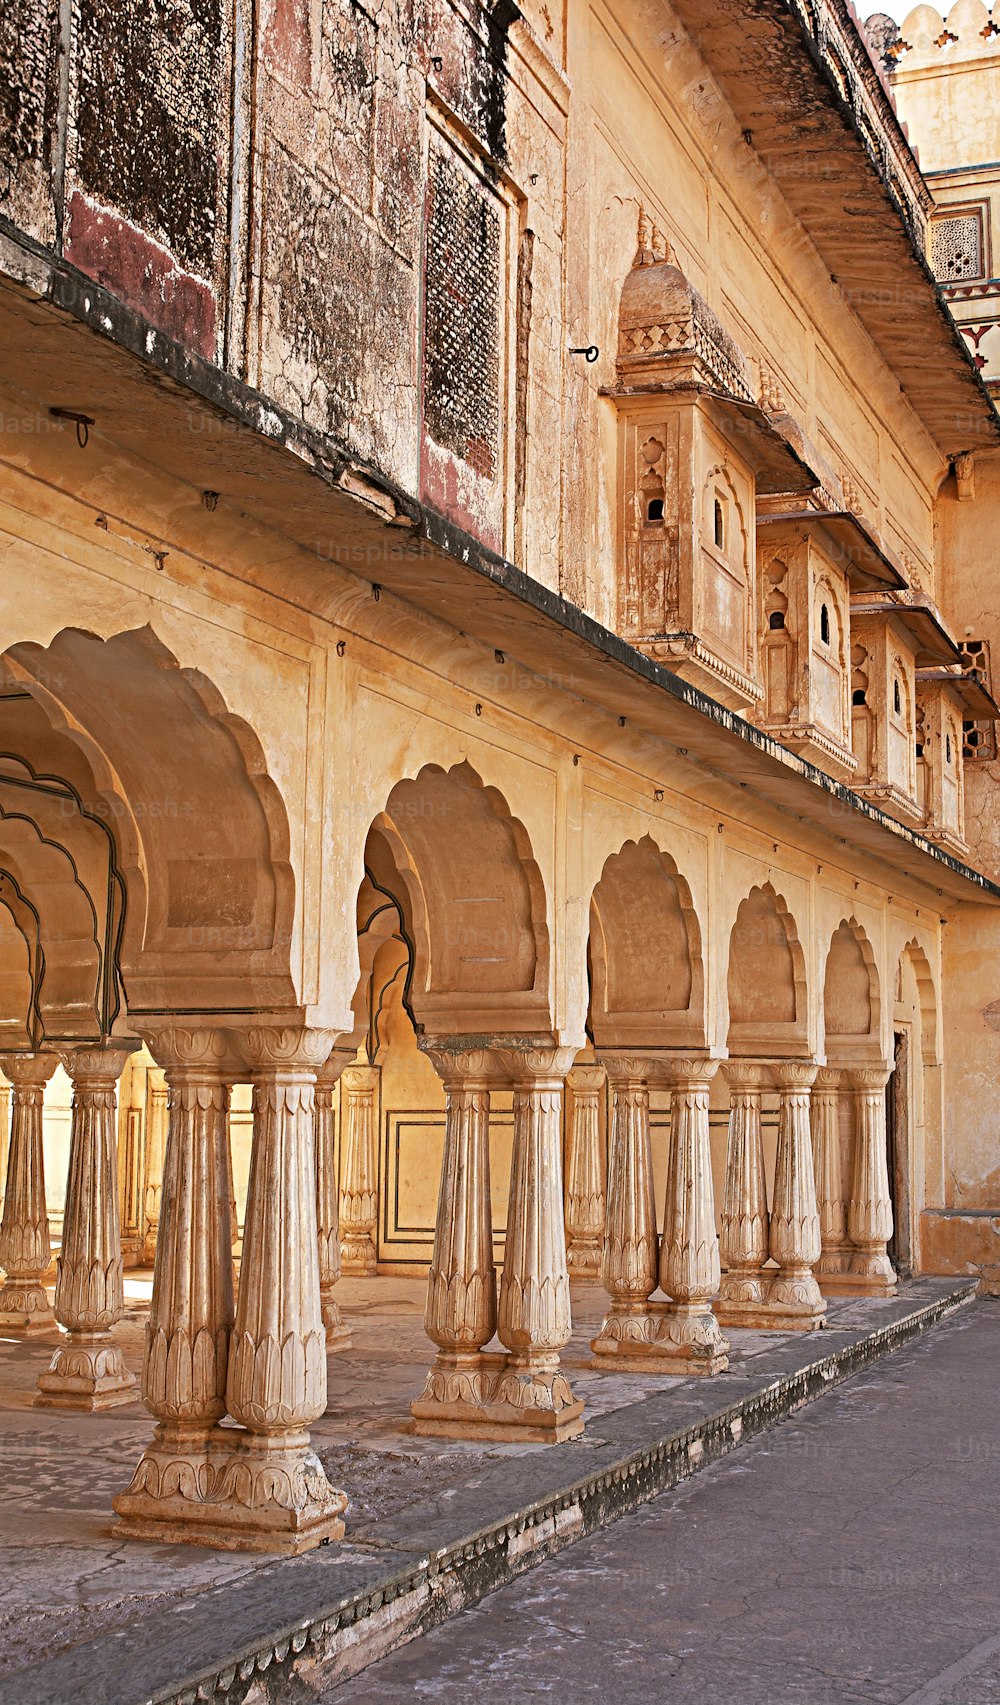 インドの古いイスラム教徒の建物の写真